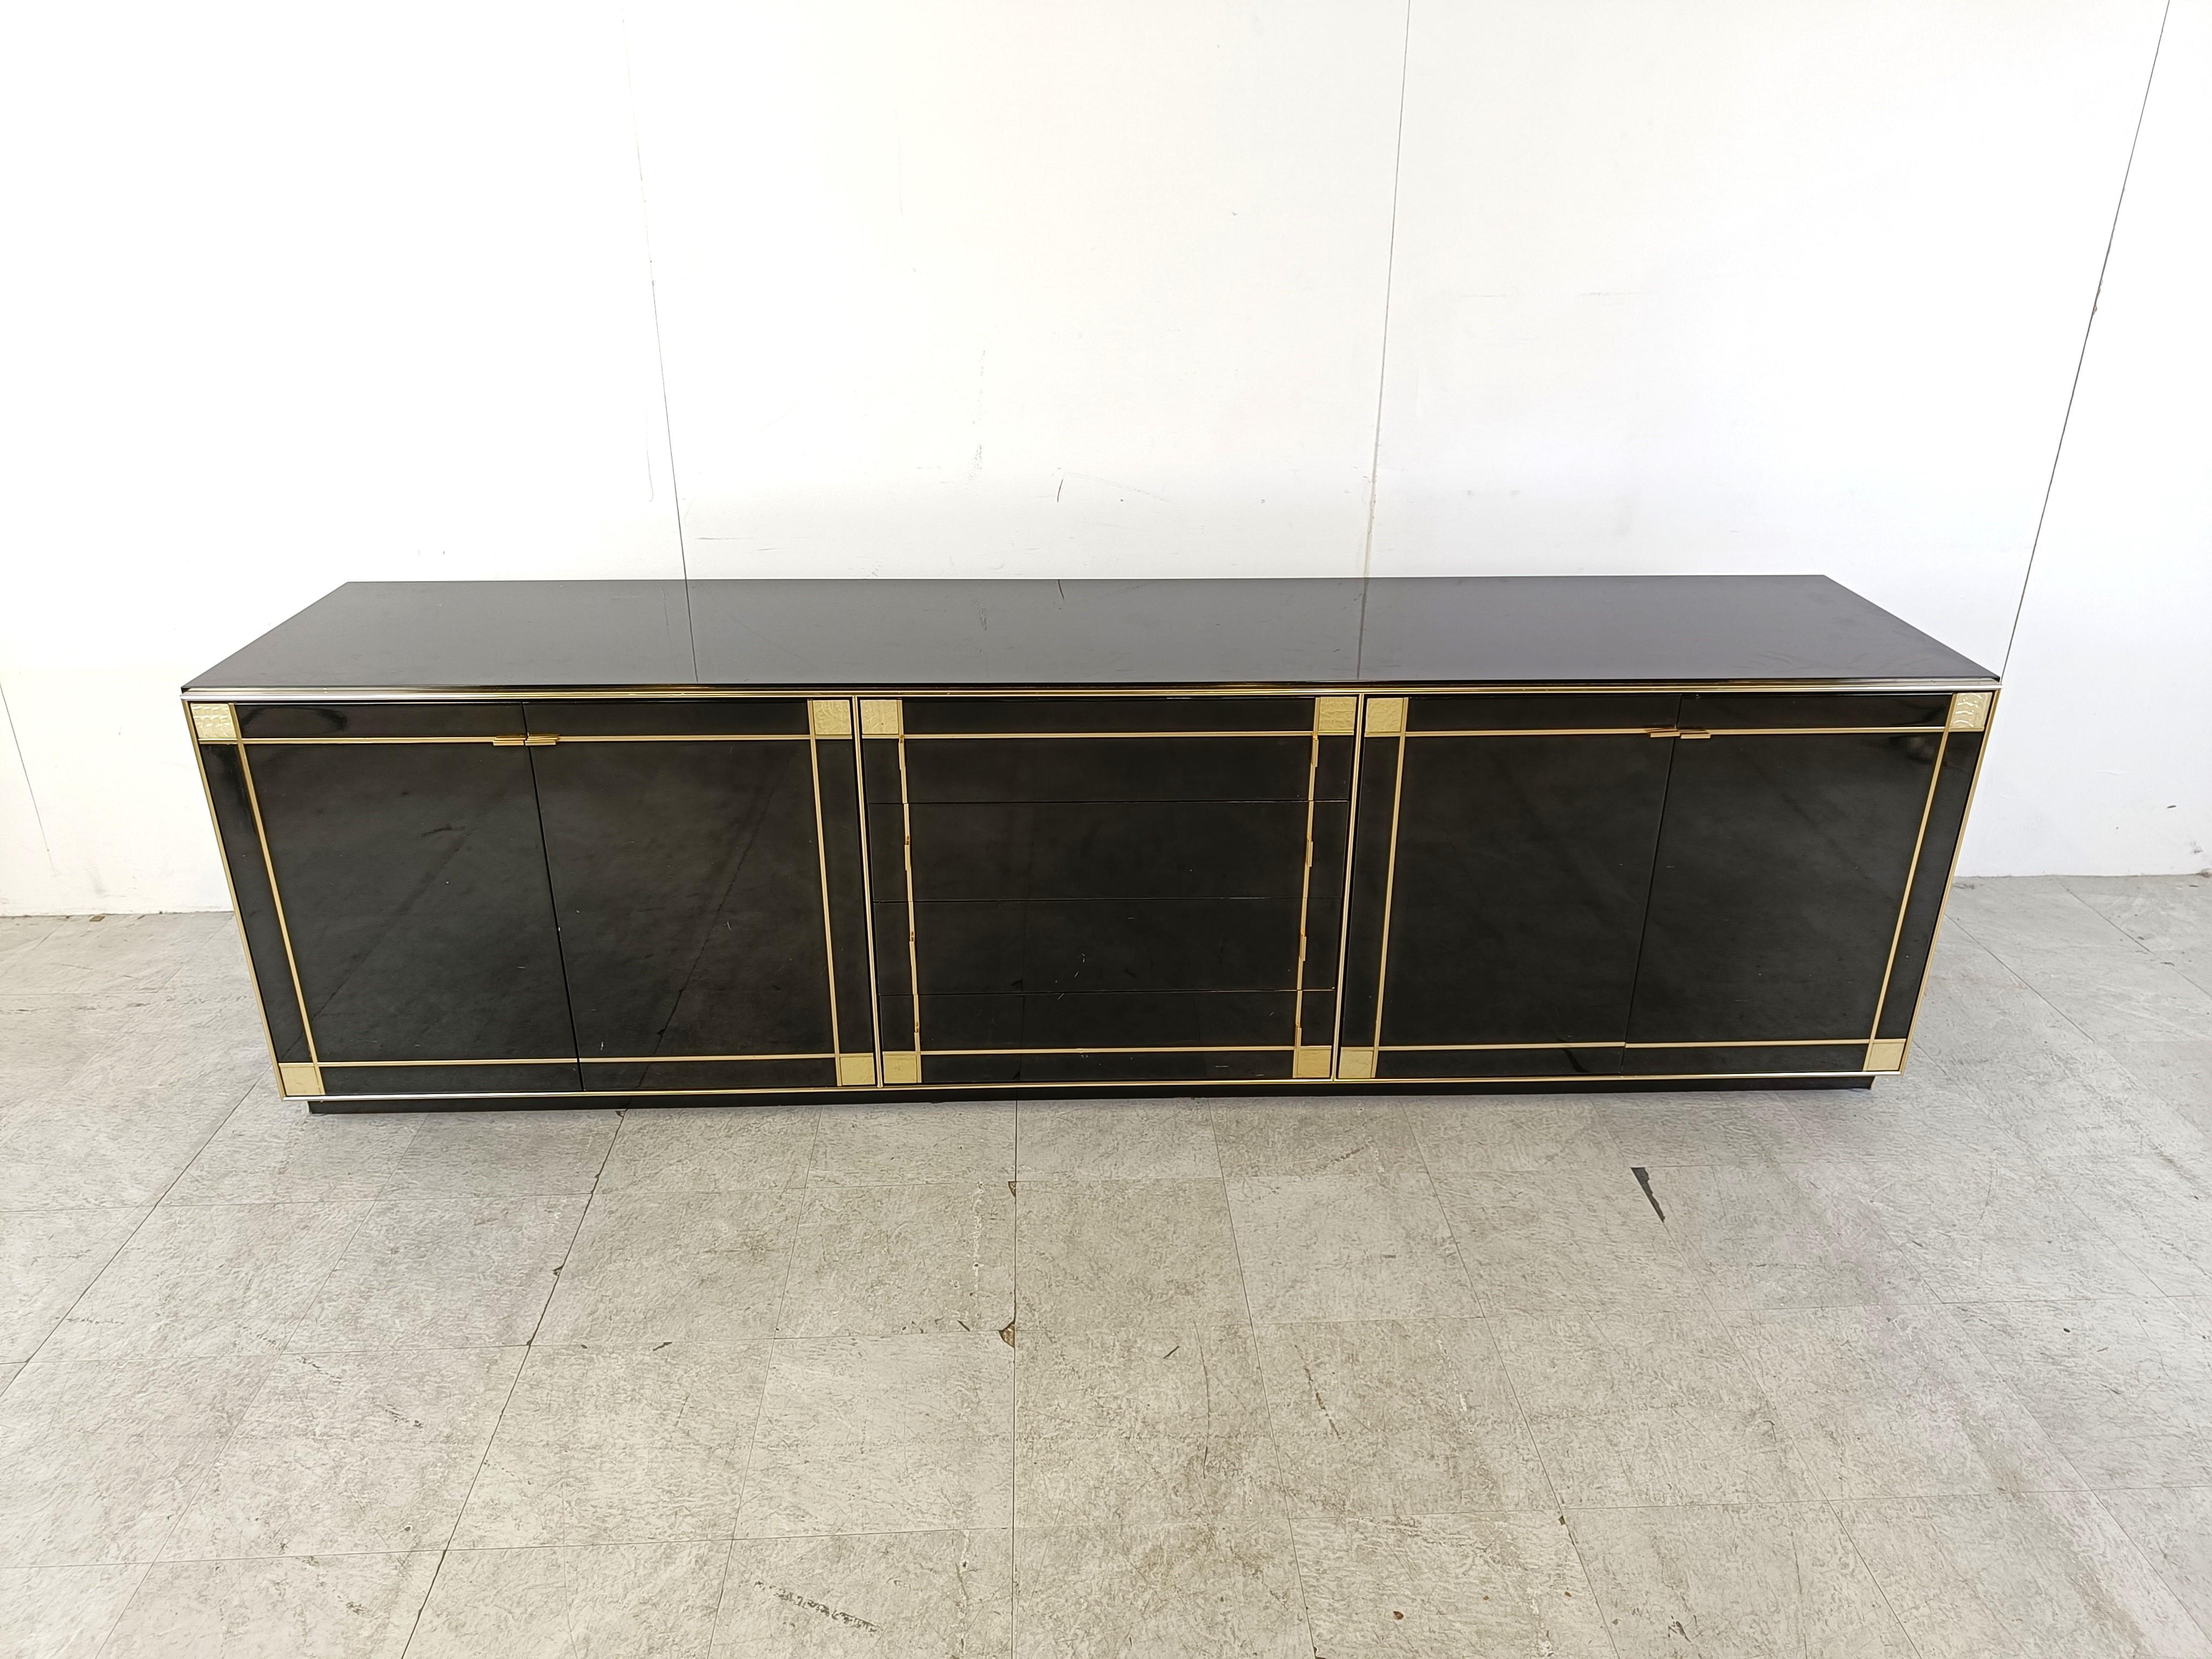 Luxuriöses Sideboard aus schwarzem Lack, Perlmutt und Messing von Pierre Cardin für Roche Bobois, bestehend aus 4 Türen und 4 Schubladen, die viel Stauraum bieten.

Die Messinglinien, die das Sideboard einrahmen, bilden einen schönen Kontrast zum